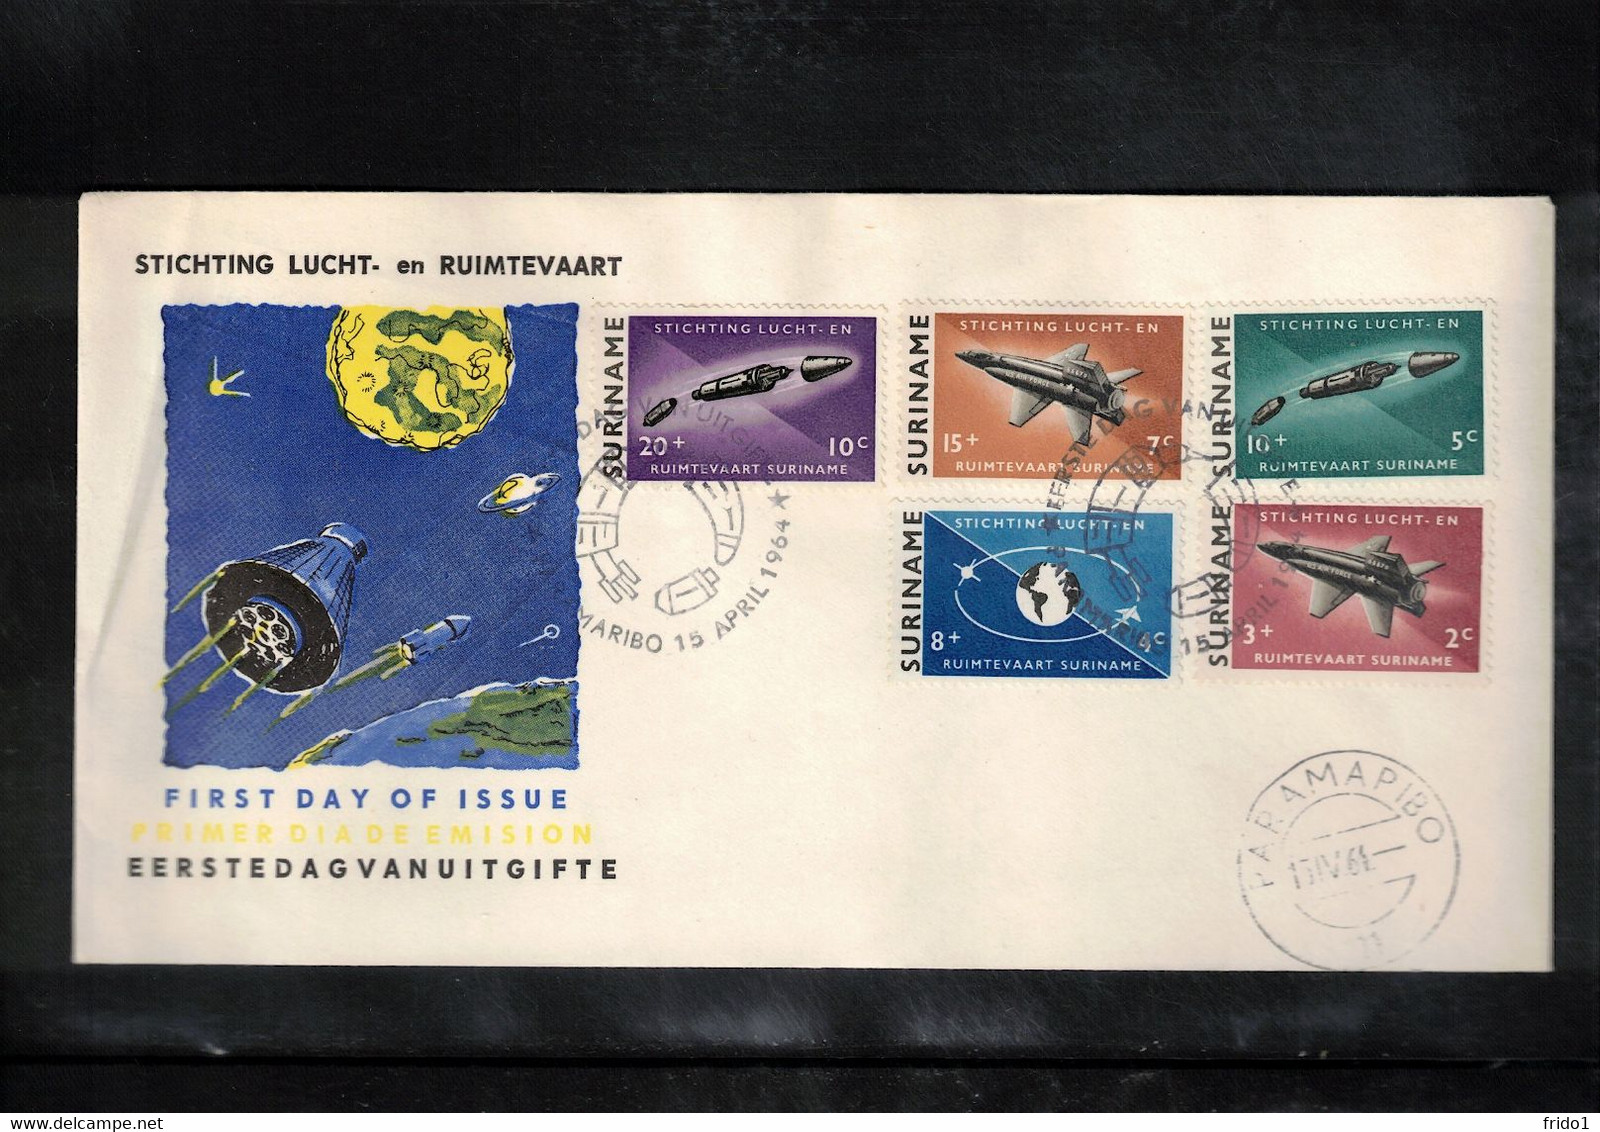 Suriname 1964 Space / Raumfahrt Rockets + Satellites FDC - América Del Sur